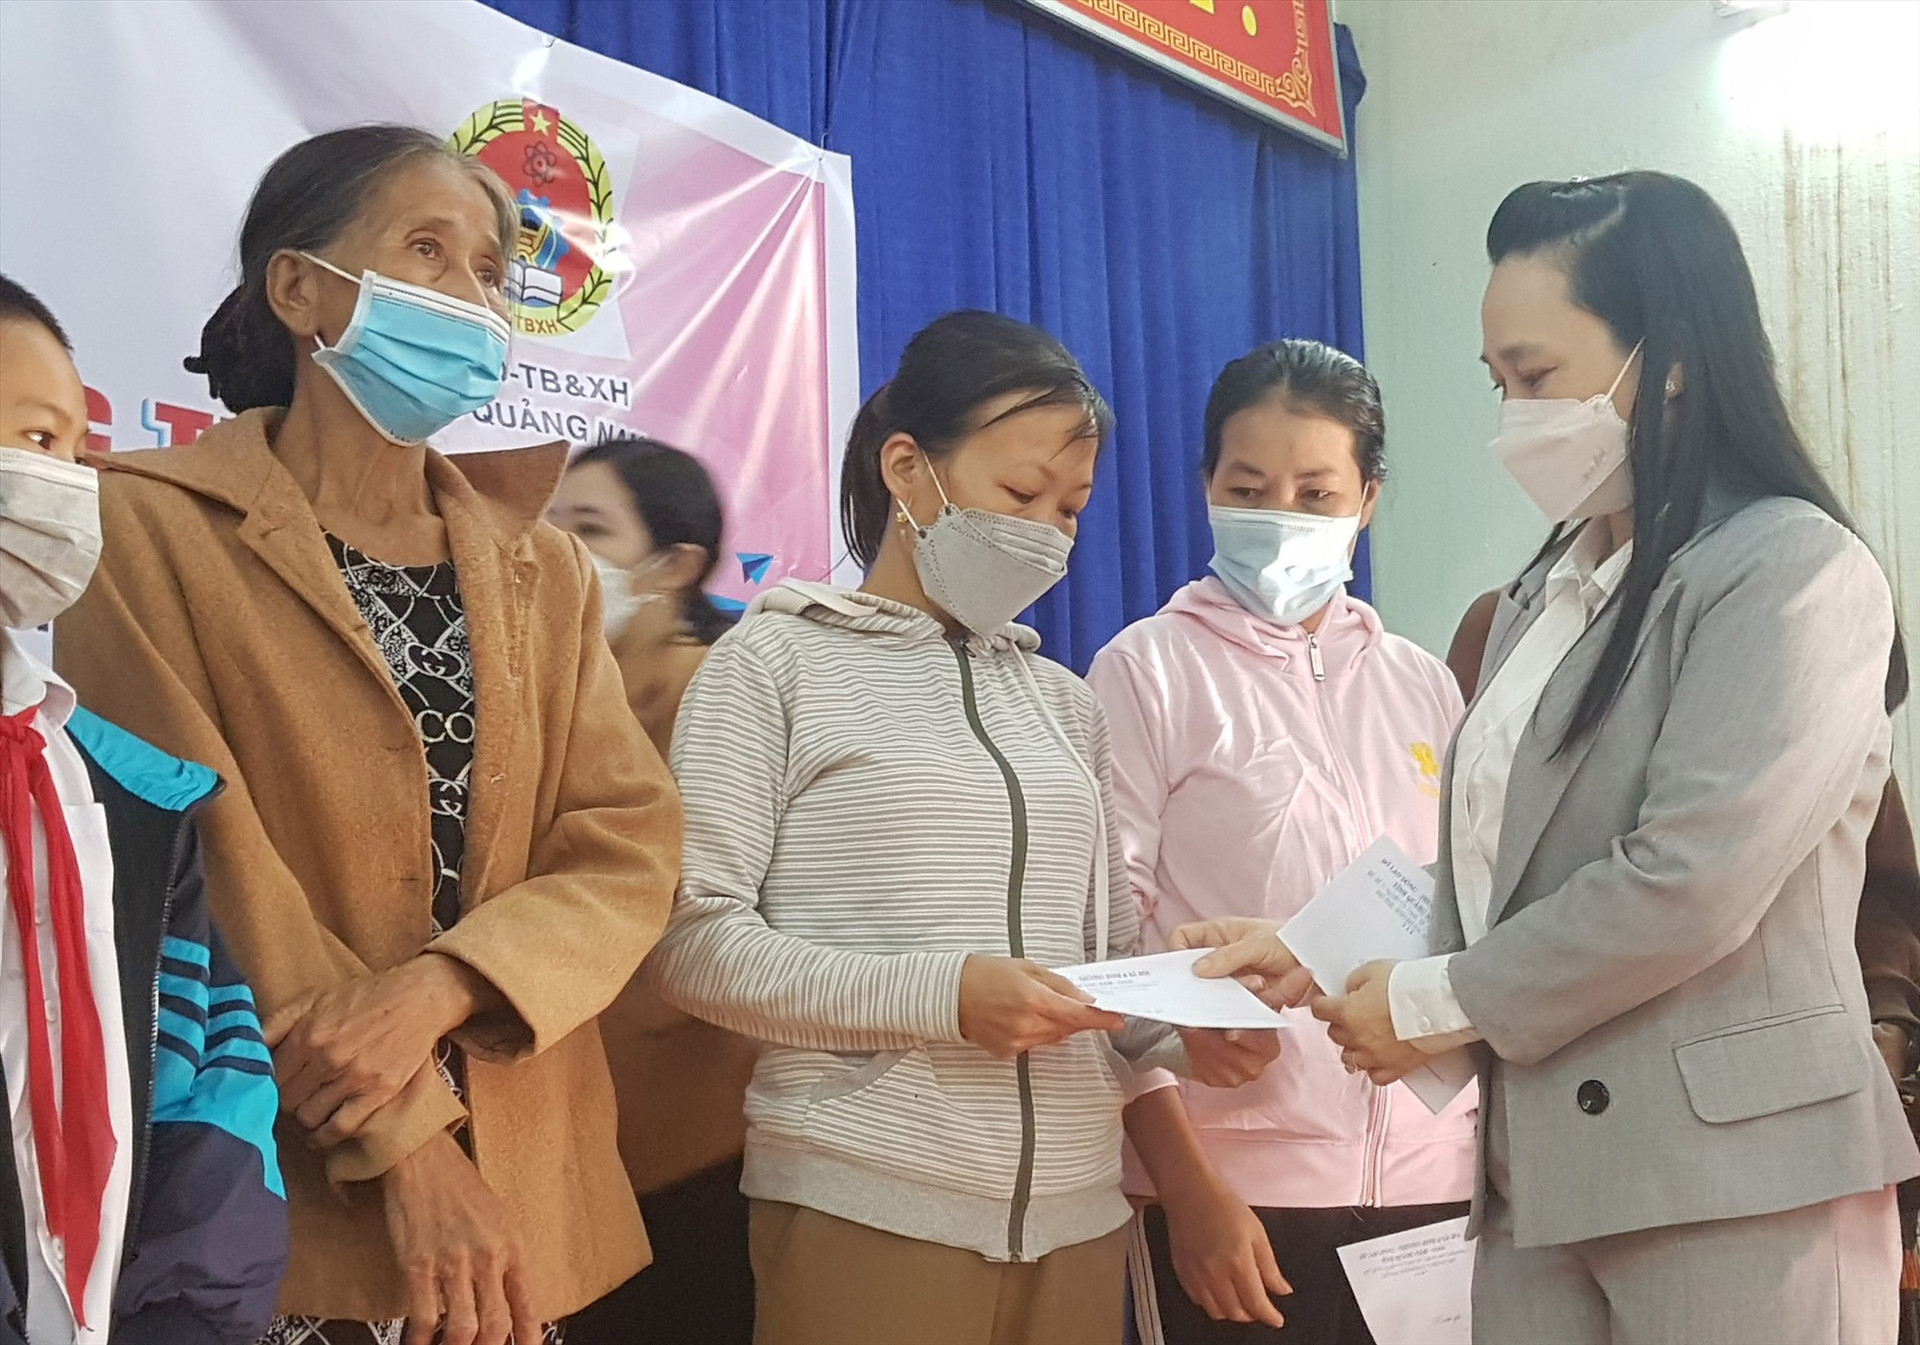 Chị Nguyễn Thị Thu Hiệp nhận quà hỗ trợ người dân khó khăn do dịch bệnh vào cuối tuần qua. Ảnh: D.L